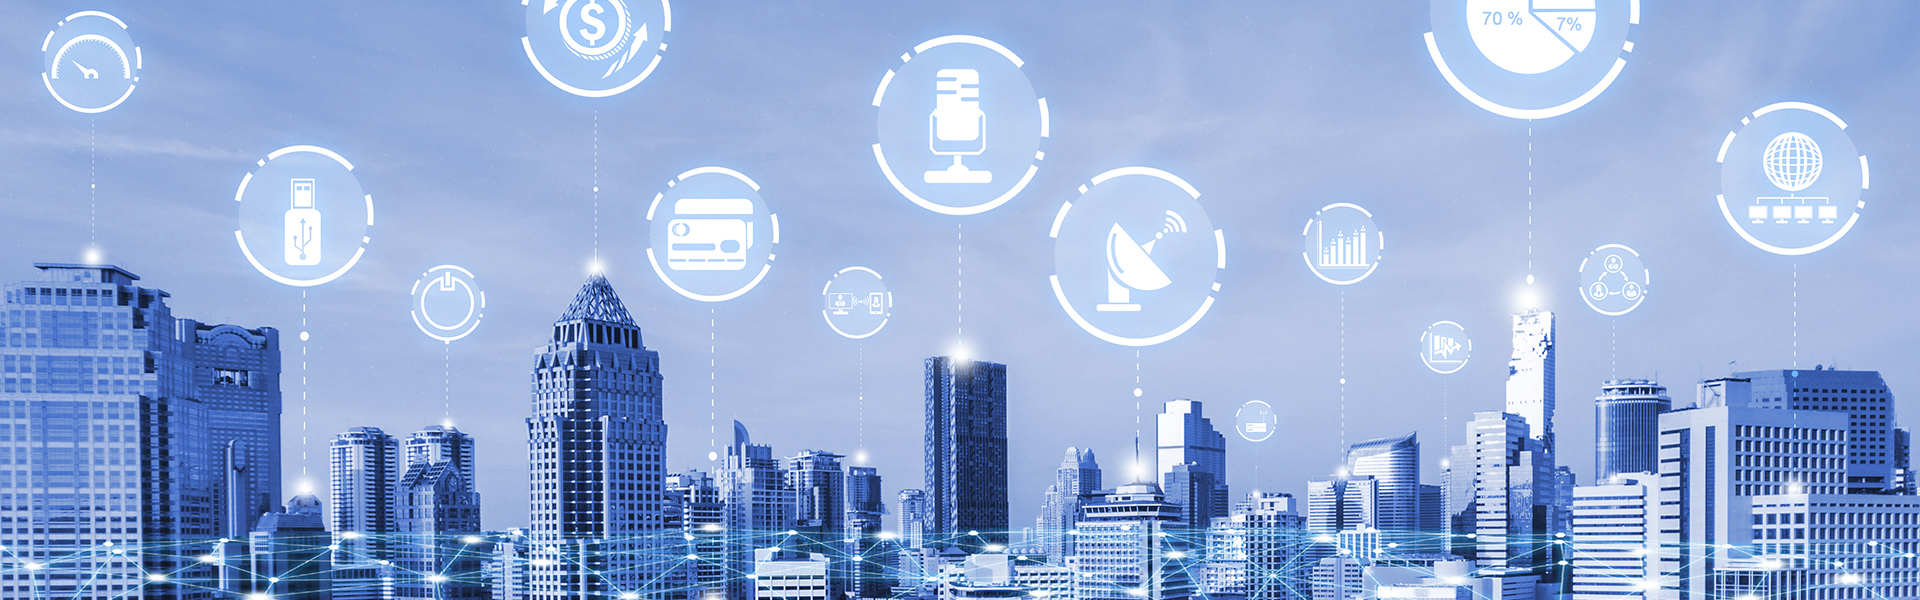 تتصل شبكة الاتصالات والإنترنت الإبداعية الحديثة في المدينة الذكية.مفهوم الاتصال الرقمي اللاسلكي 5G وإنترنت الأشياء في المستقبل.